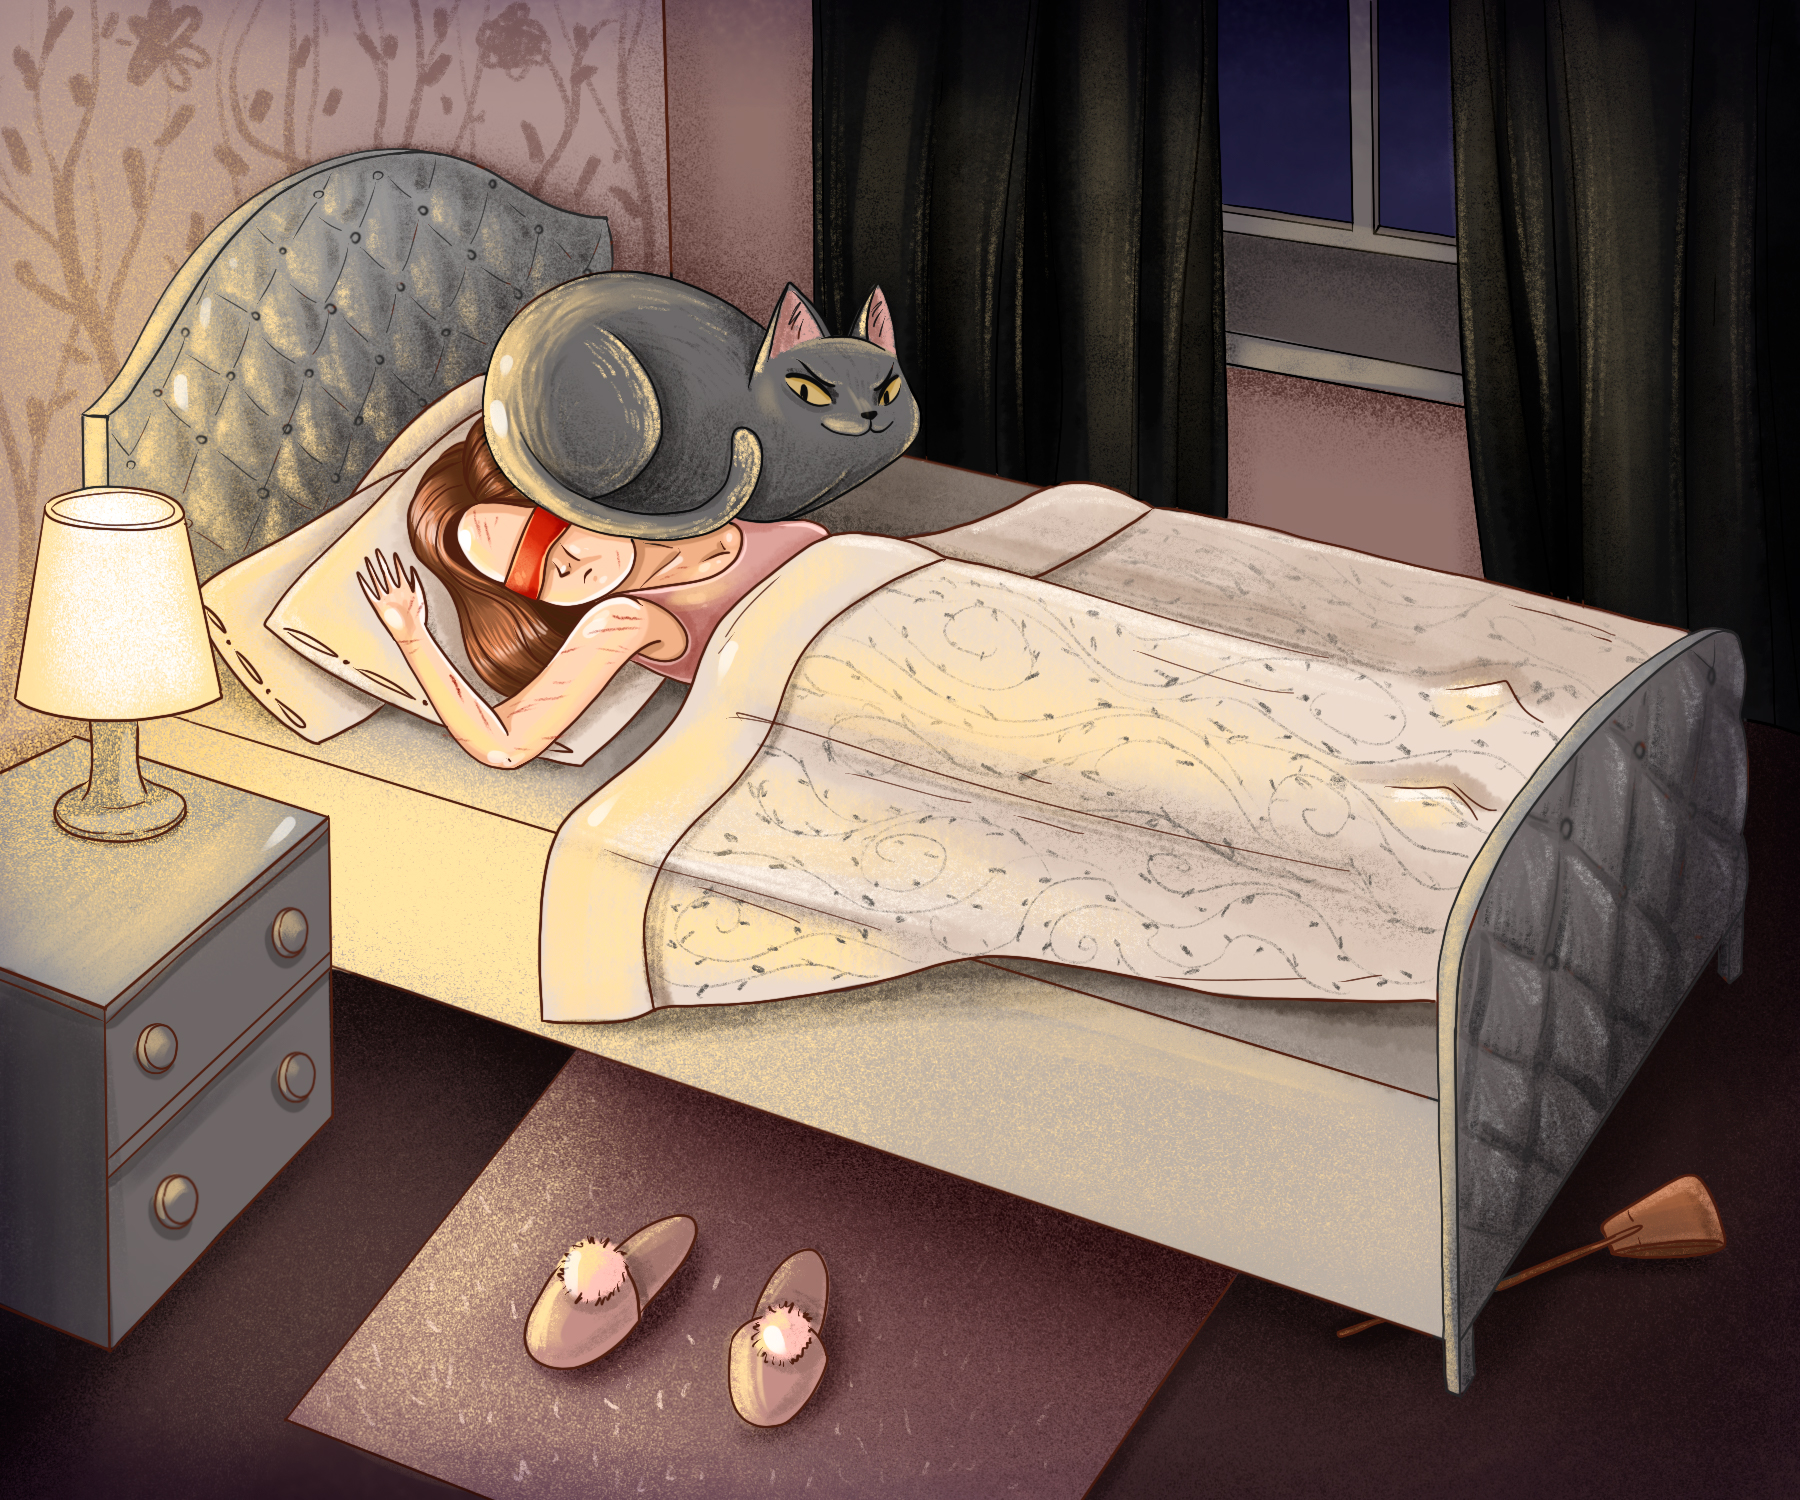 Никуда спи. Смешной сон. Сон иллюстрация. Прикольных снов. Спящий кот в кровати.